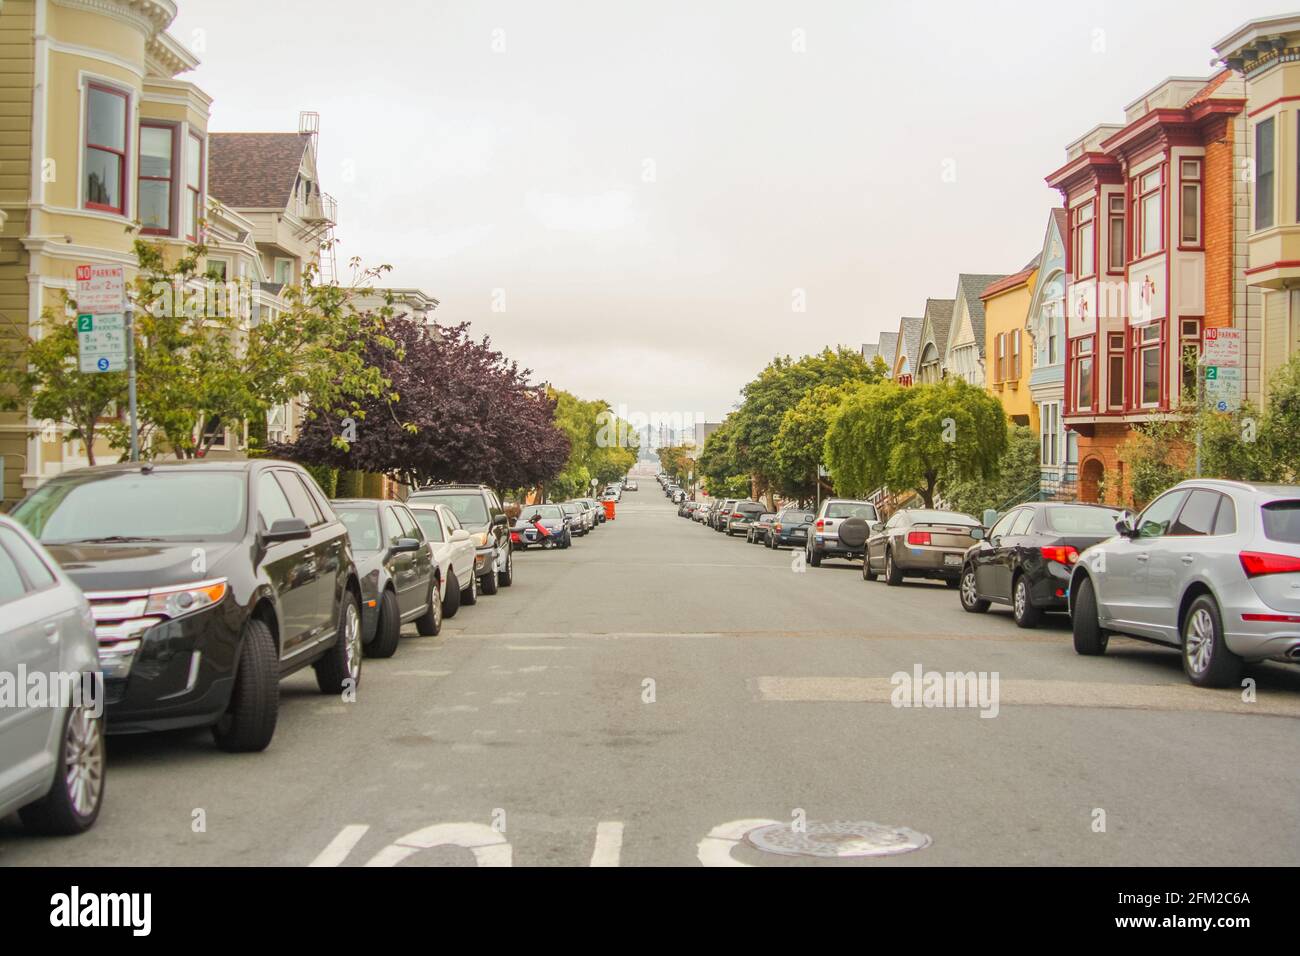 Inquadratura orizzontale di una bella strada con alberi, auto parcheggiate e tradizionali case di San Francisco su entrambi i lati, California - Stati Uniti d'America Foto Stock